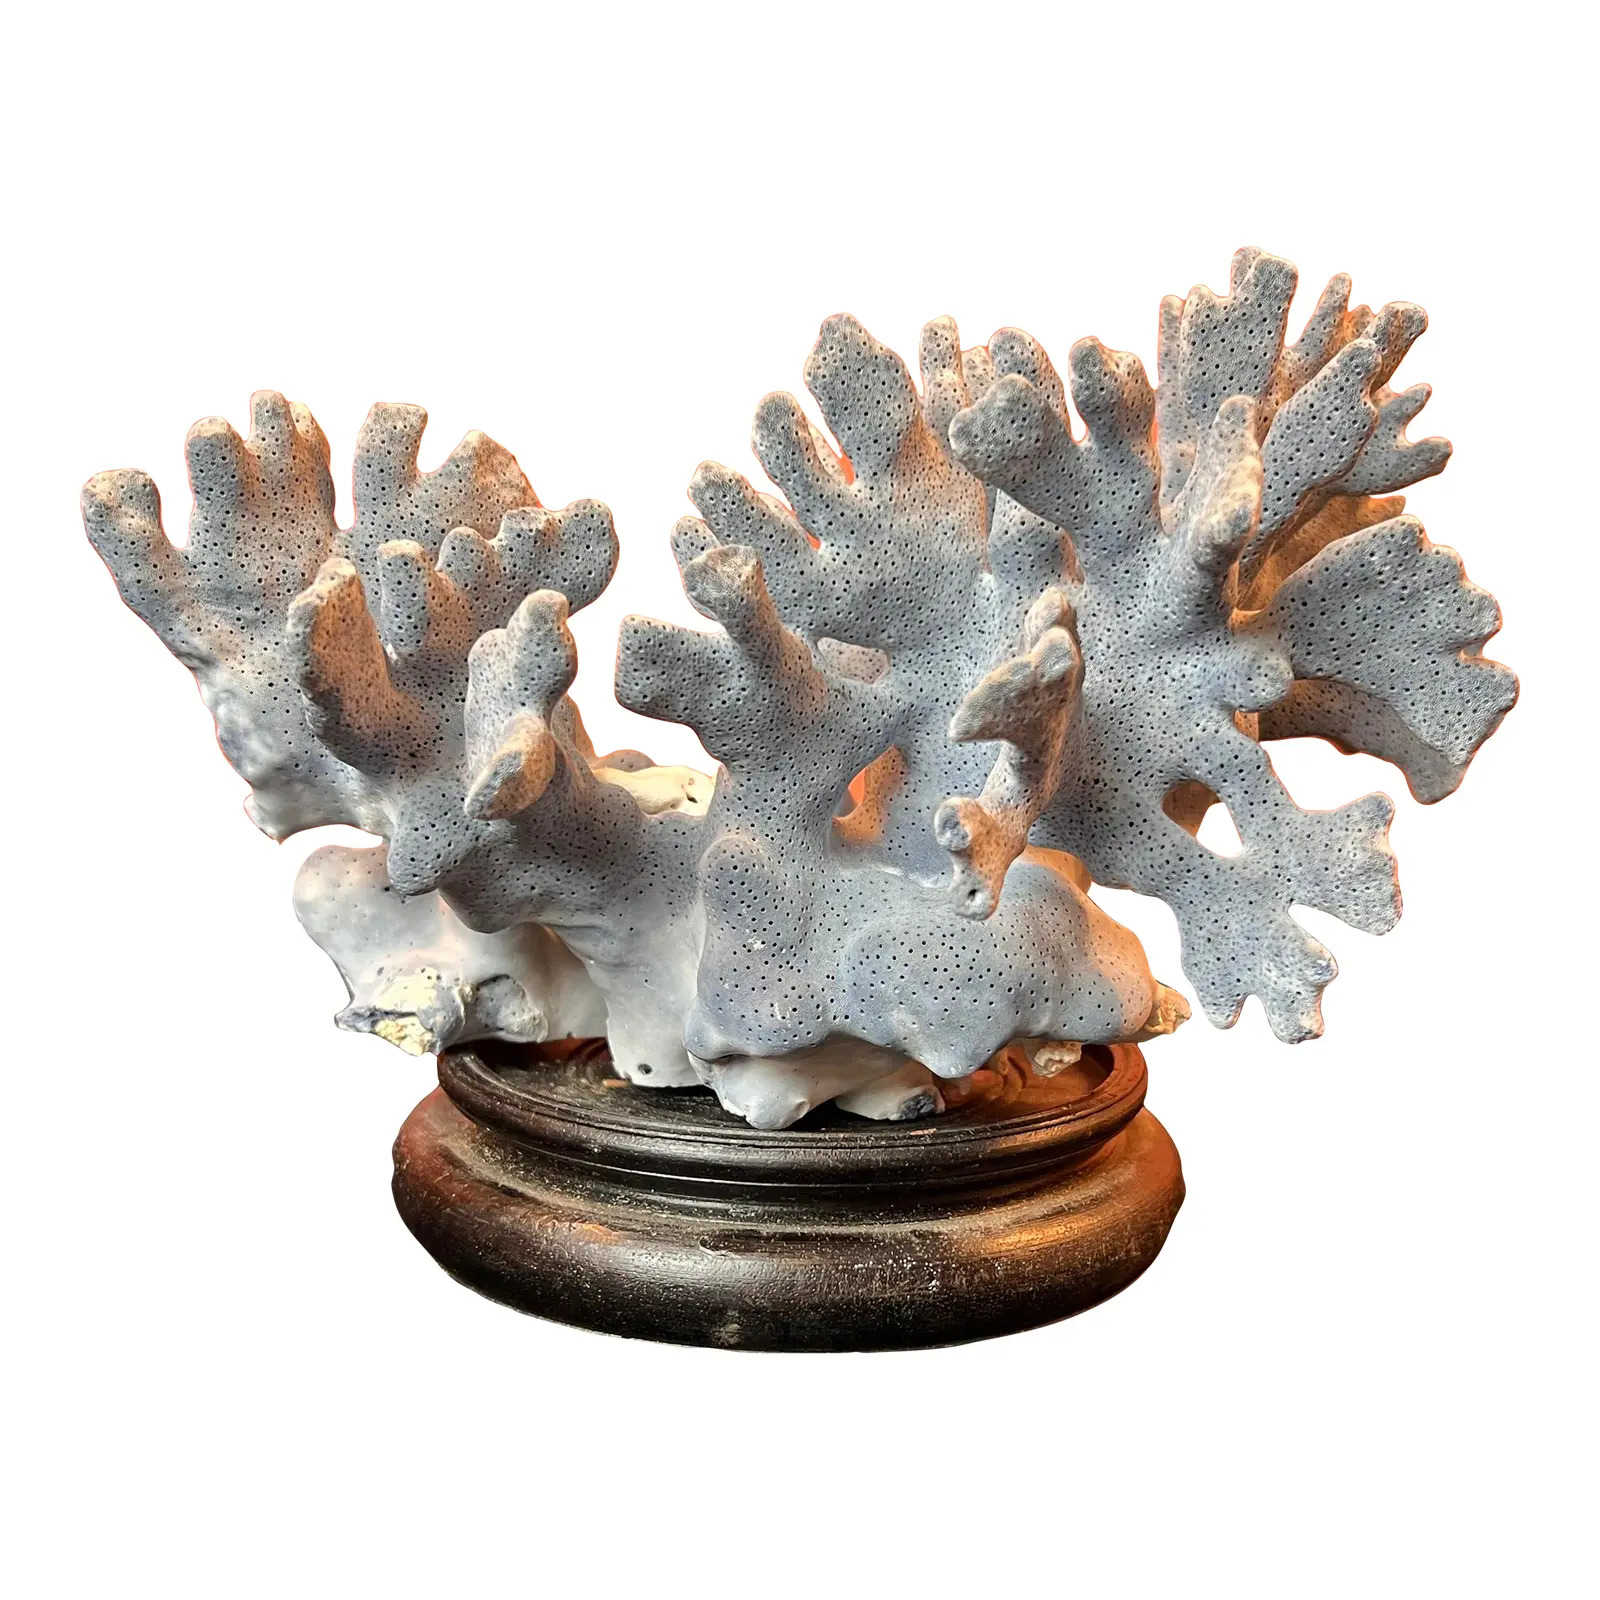 Natural Blue Coral, Curiosity Cabinet Decor on Vintage Wooden Base